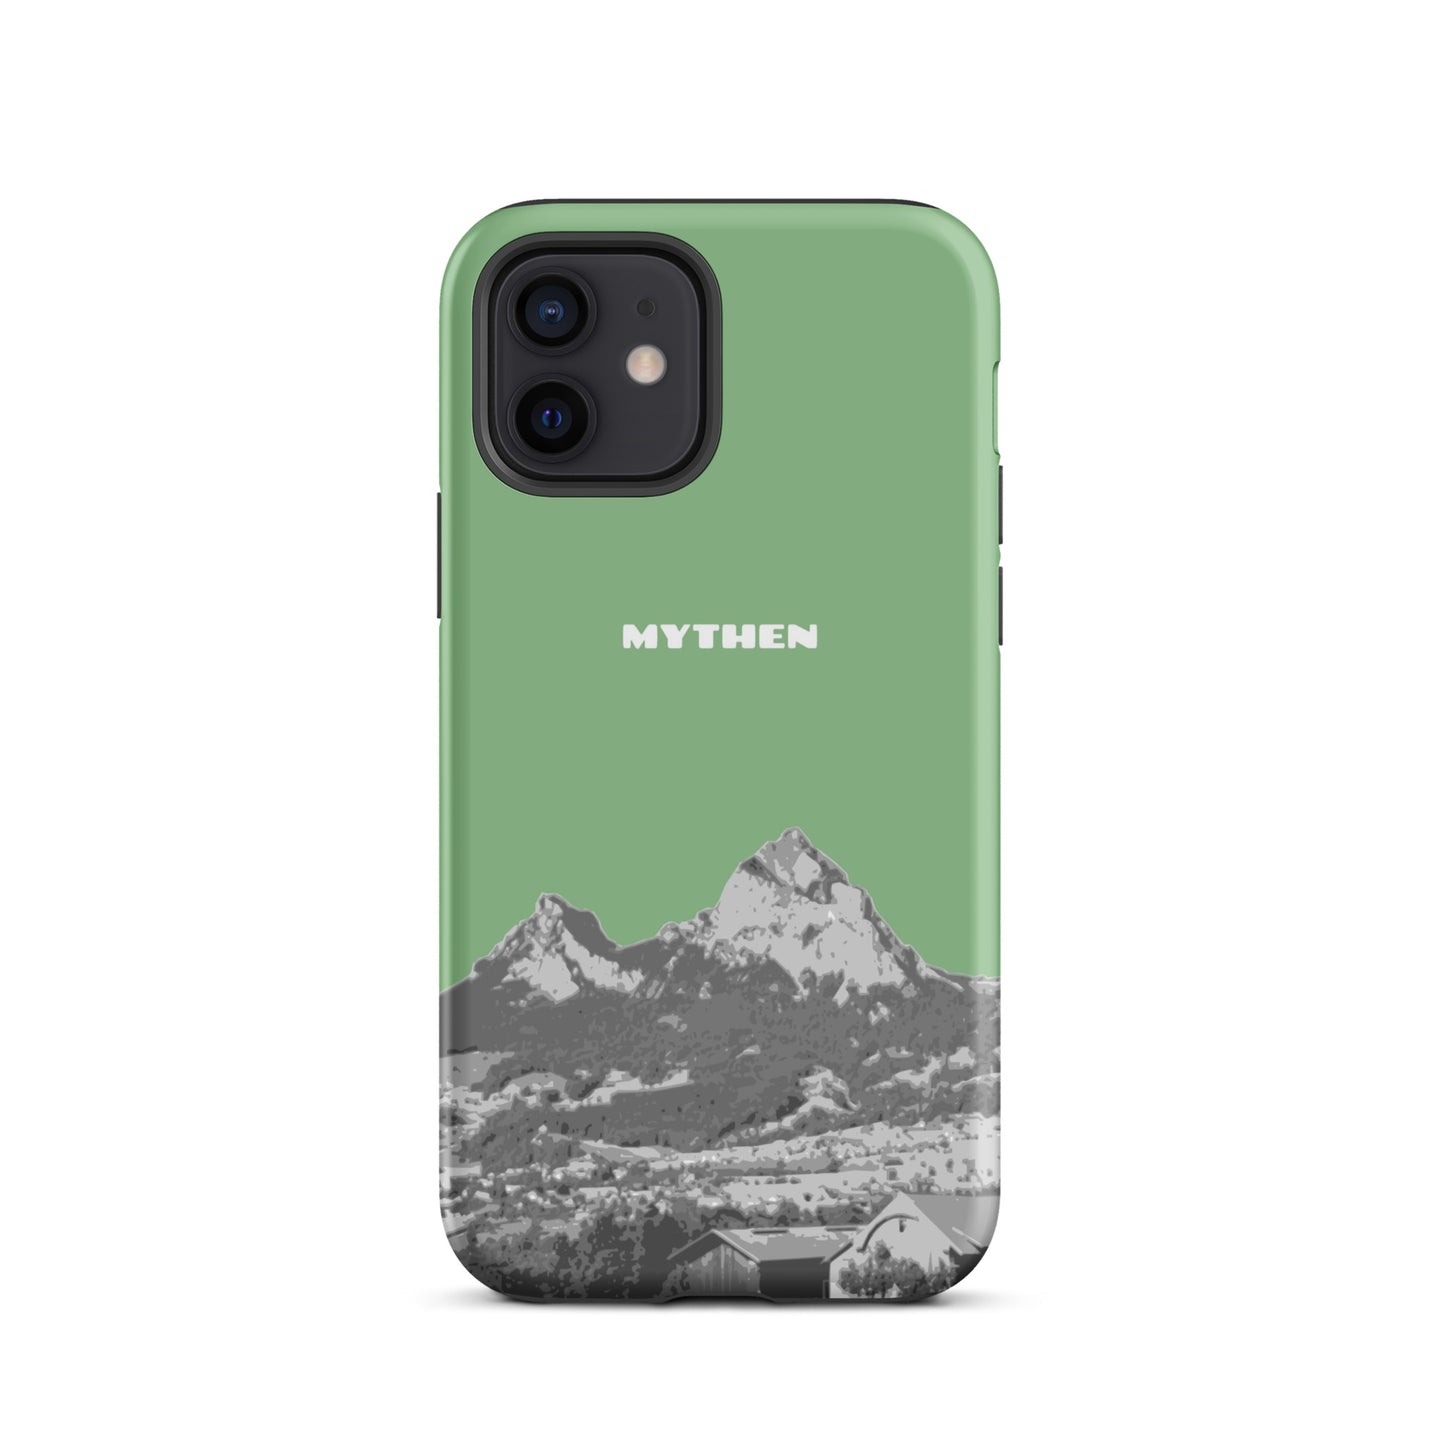 Hülle für das iPhone 12 von Apple in der Farbe Hellgrün, dass den Grossen Mythen und den Kleinen Mythen bei Schwyz zeigt. 